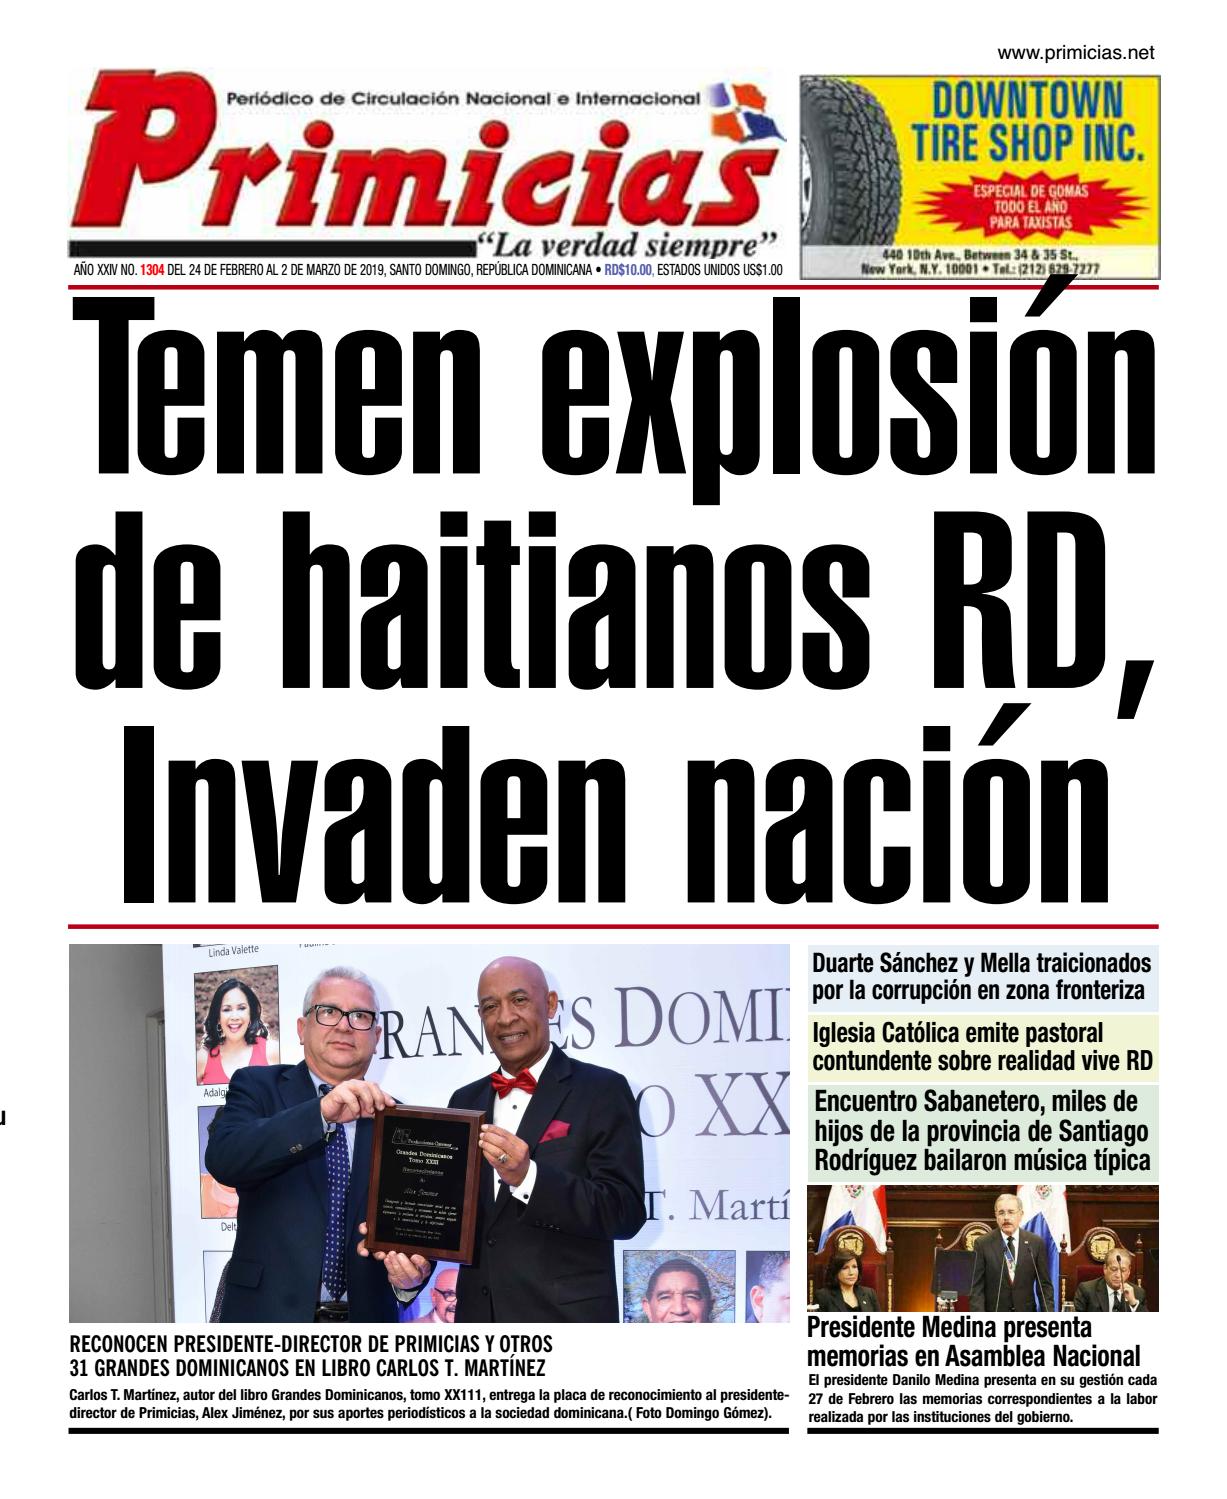 Portada Periódico Primicias, Lunes 04 de Marzo 2019